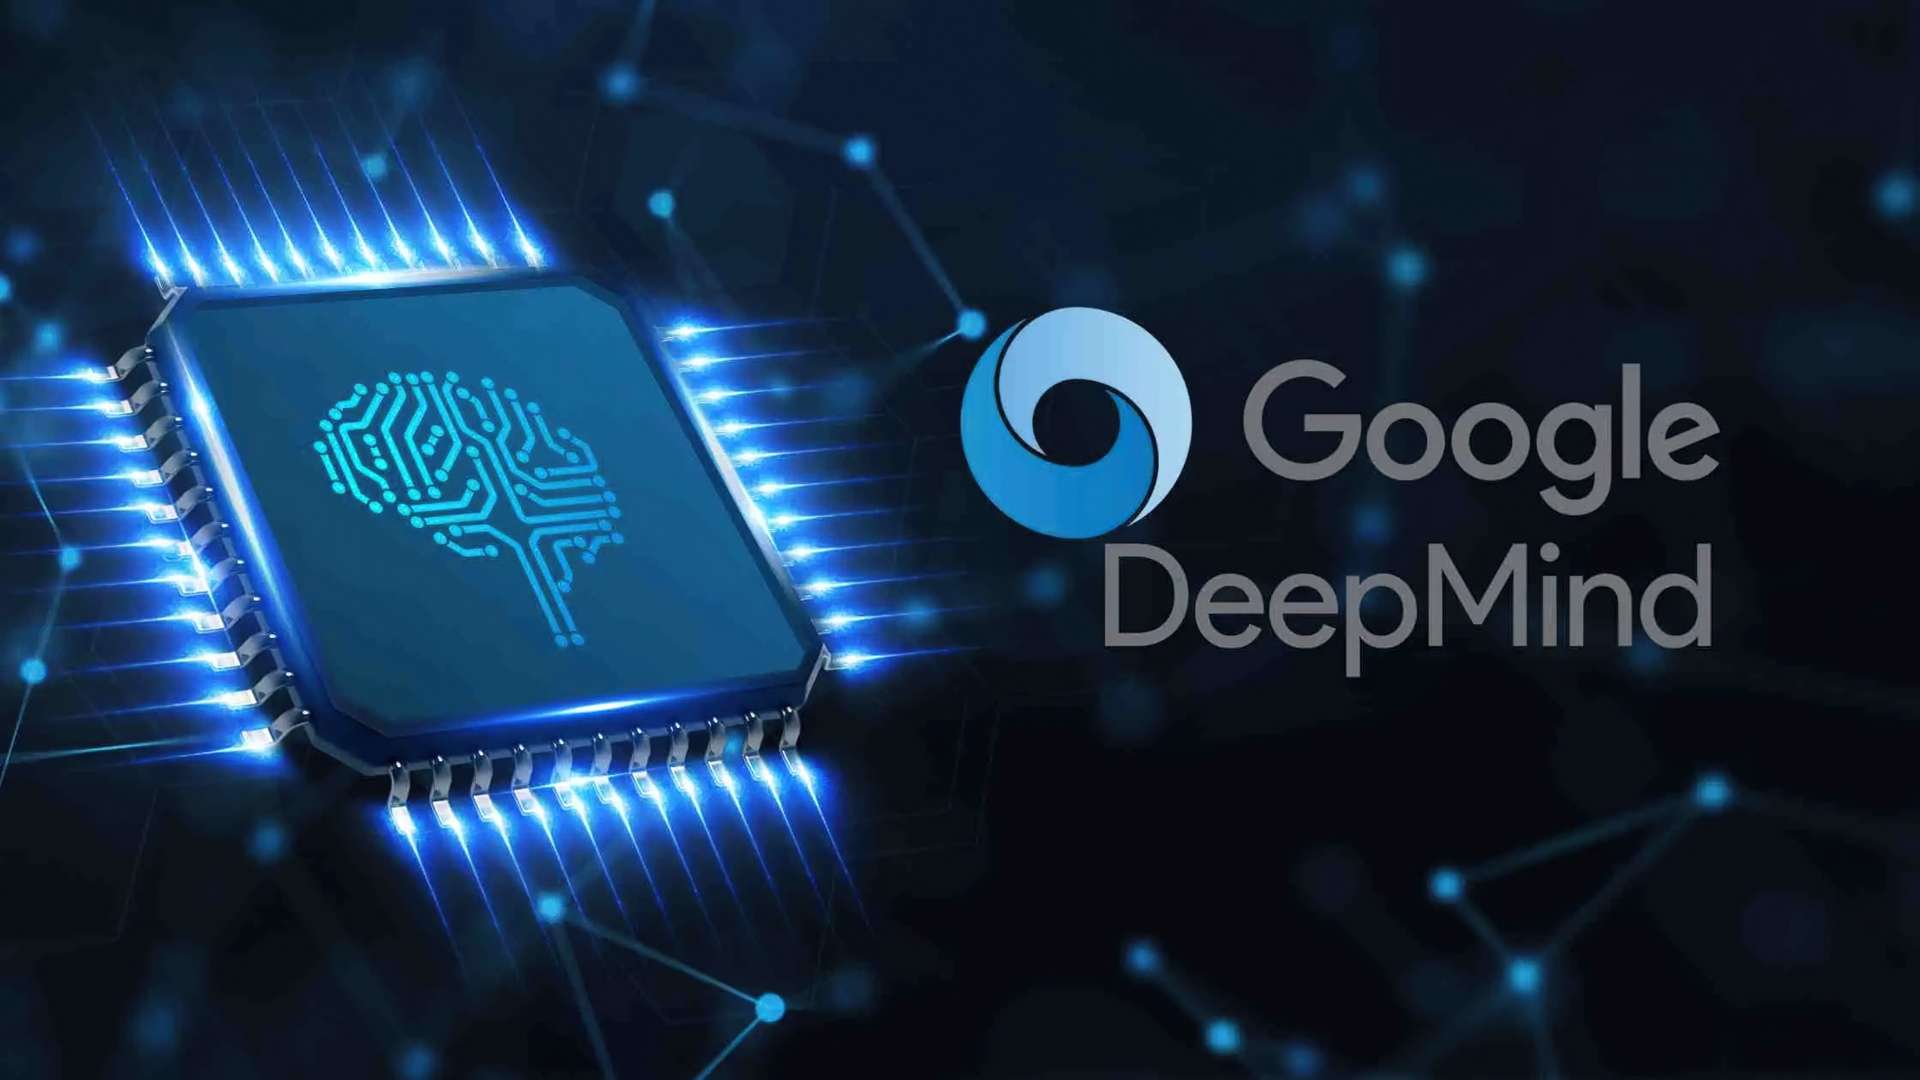 DeepMind di Google afferma che è sul punto di raggiungere un’intelligenza a livello umano